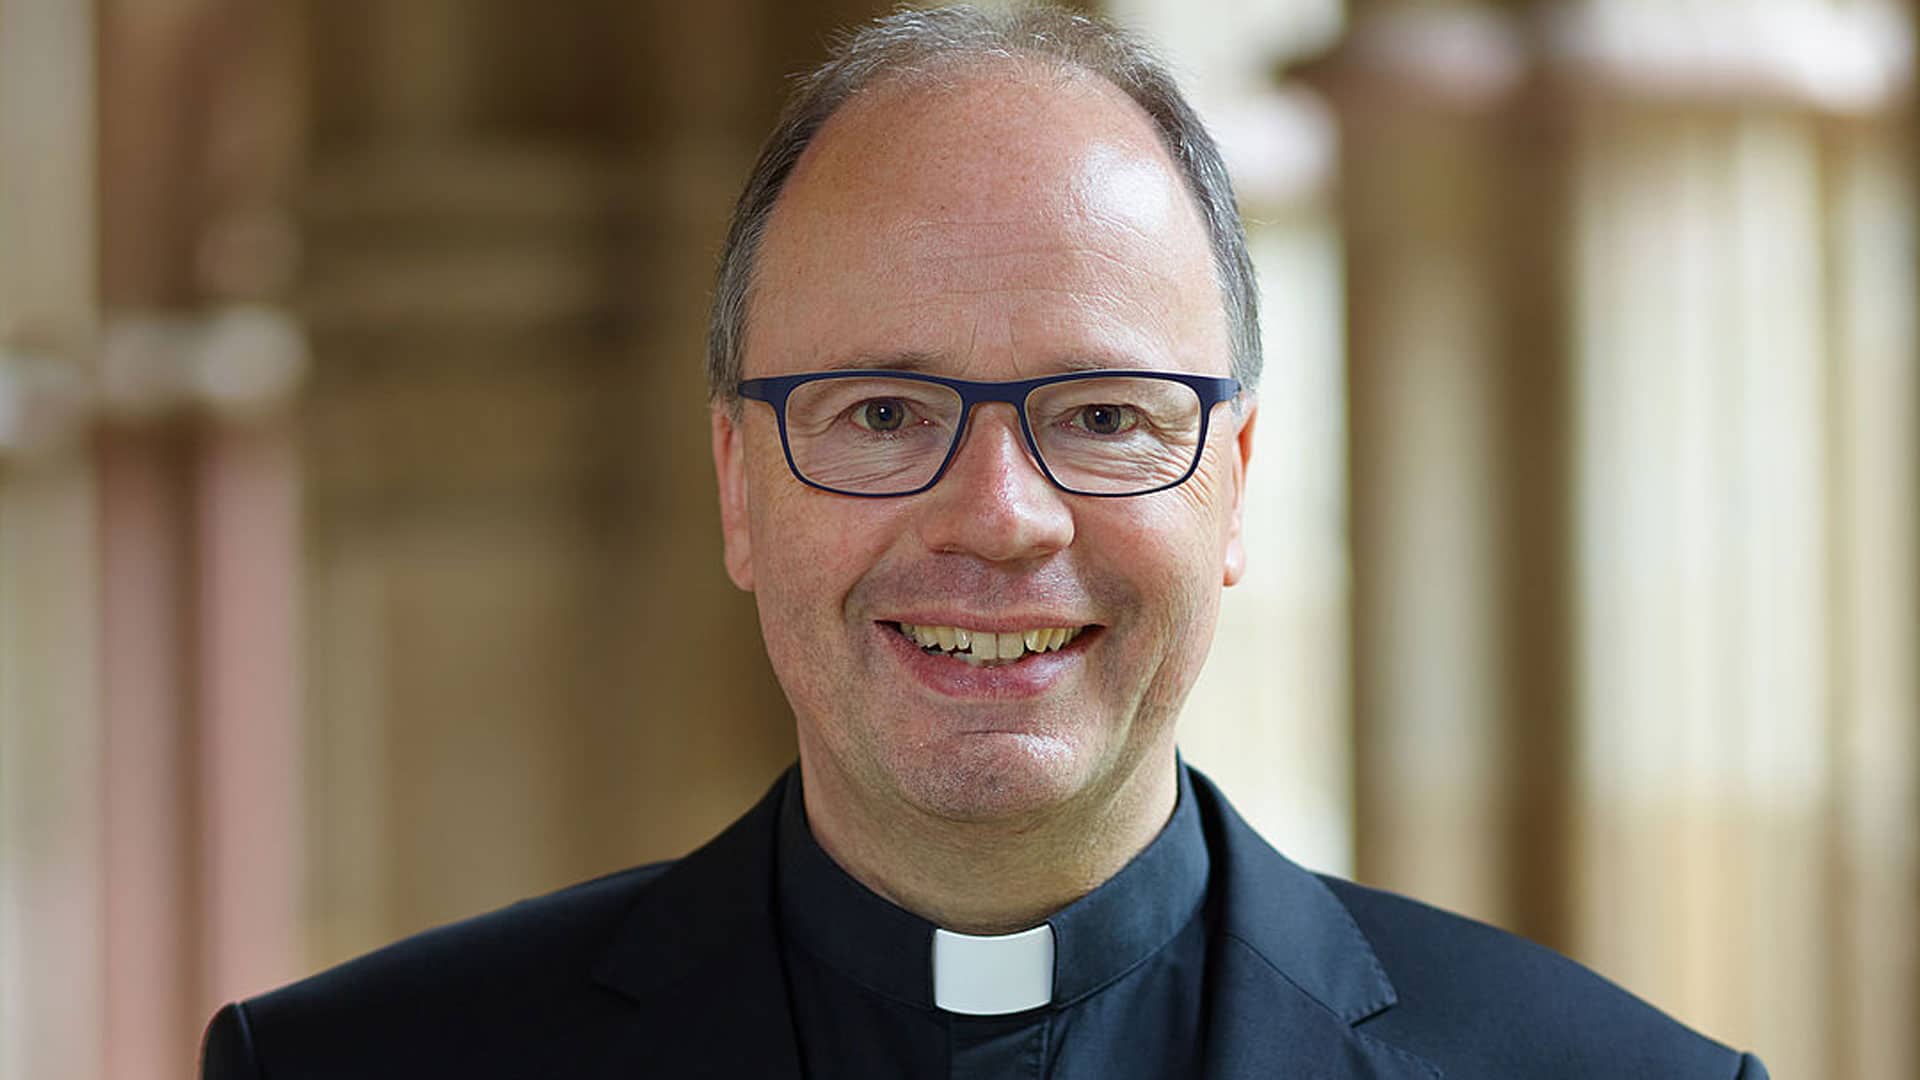 Bischof Stephan Ackermann ist der Missbrauchsbeauftragte der Deutschen Bischofskonferenz